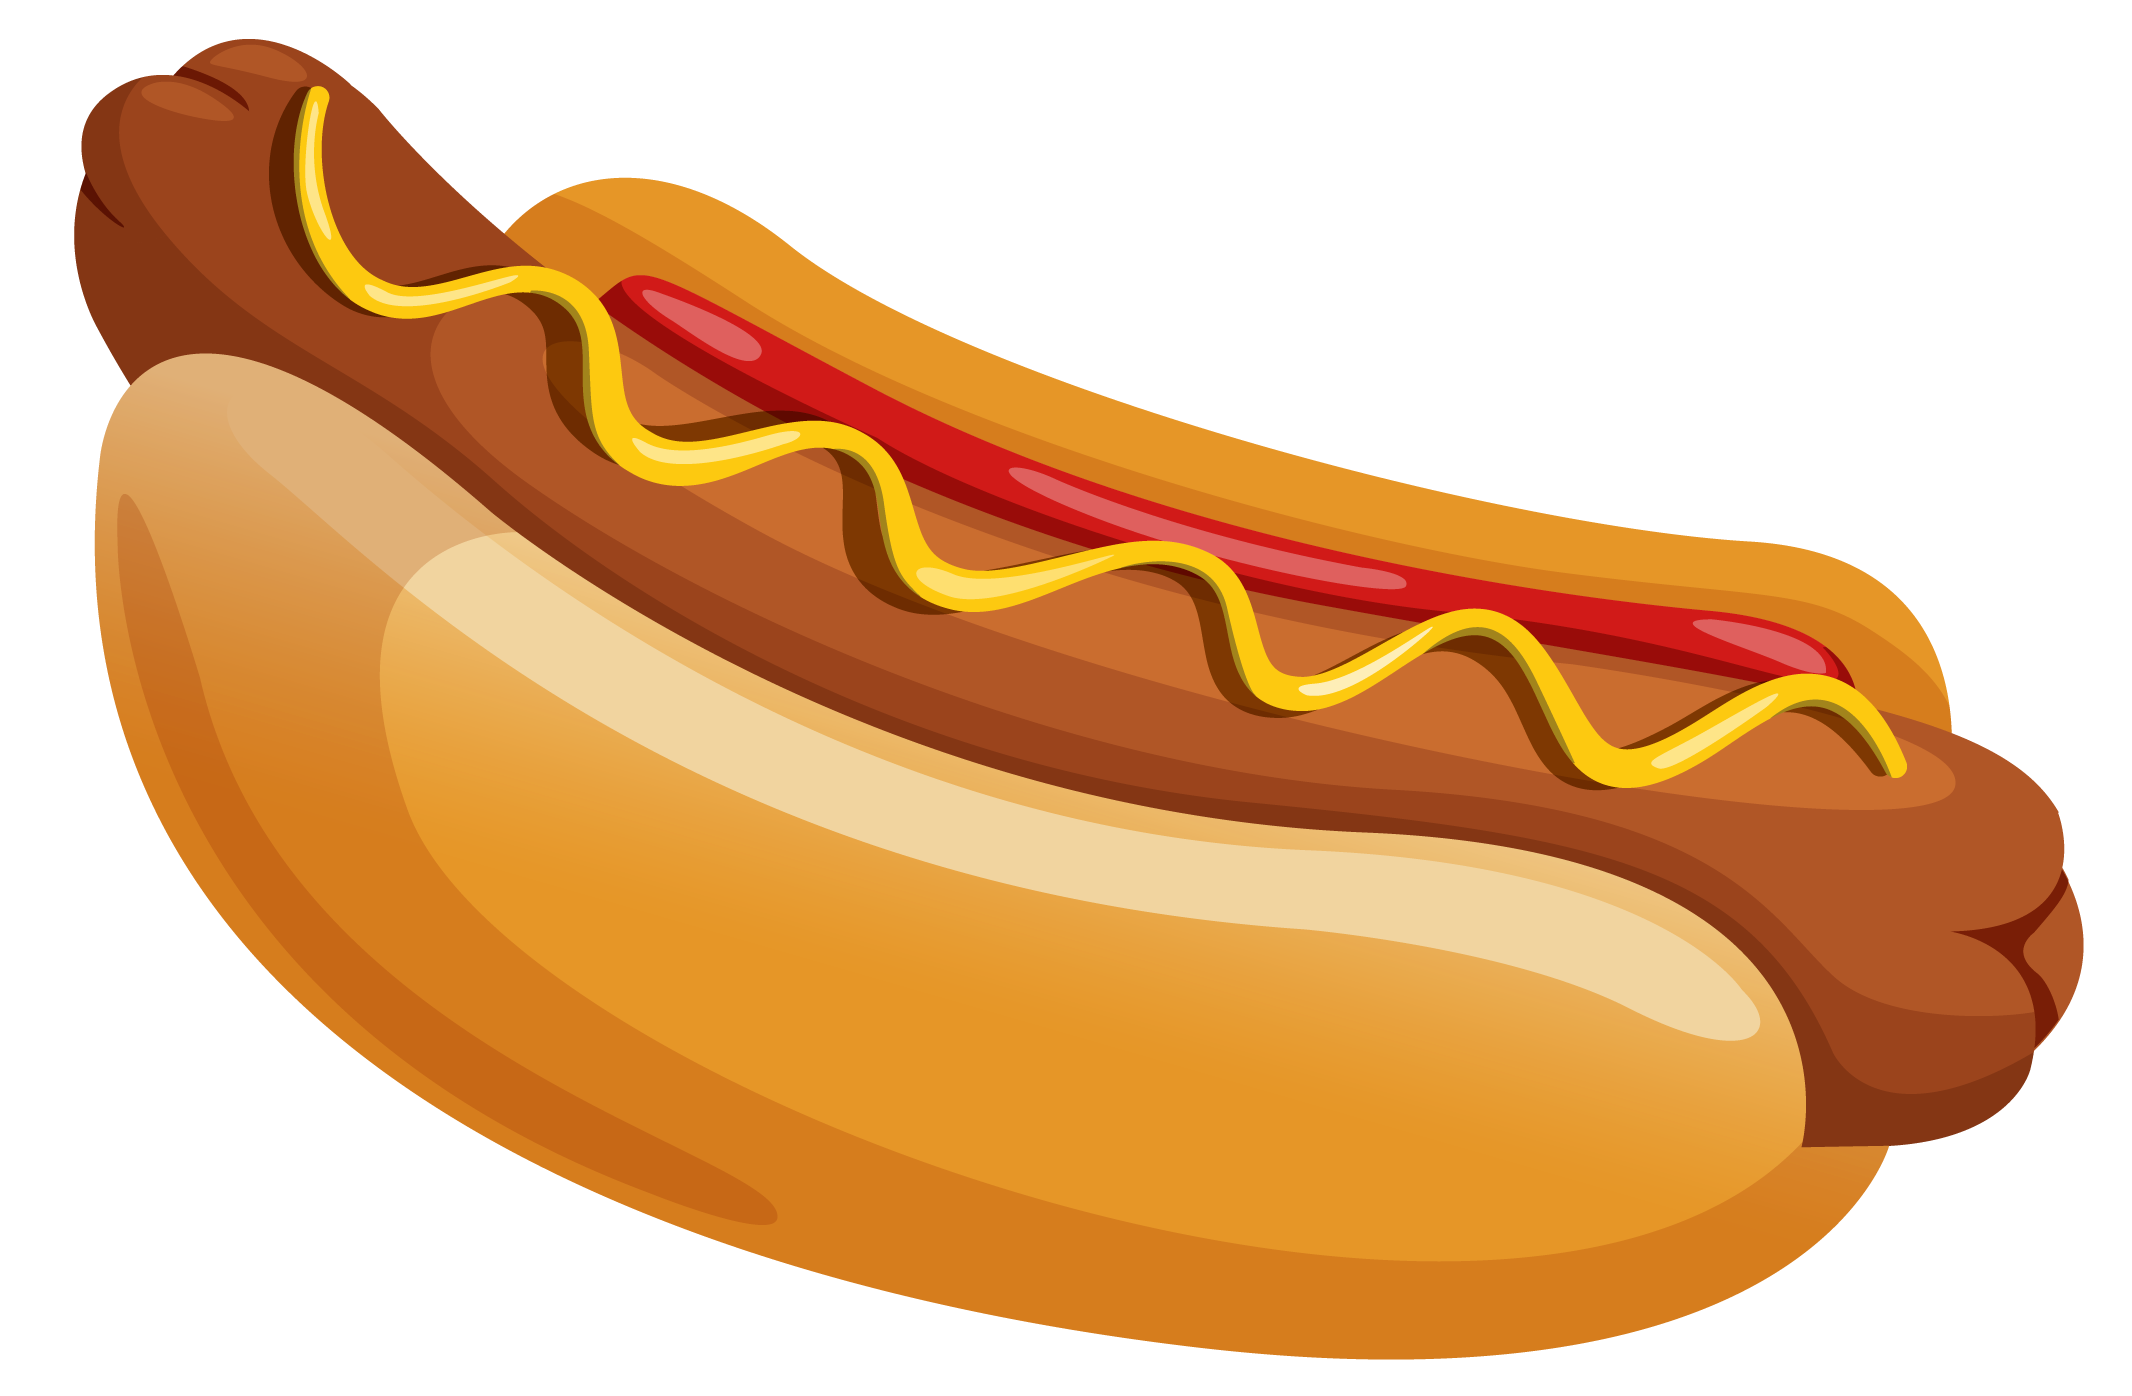 Hot dog clip art download image 5